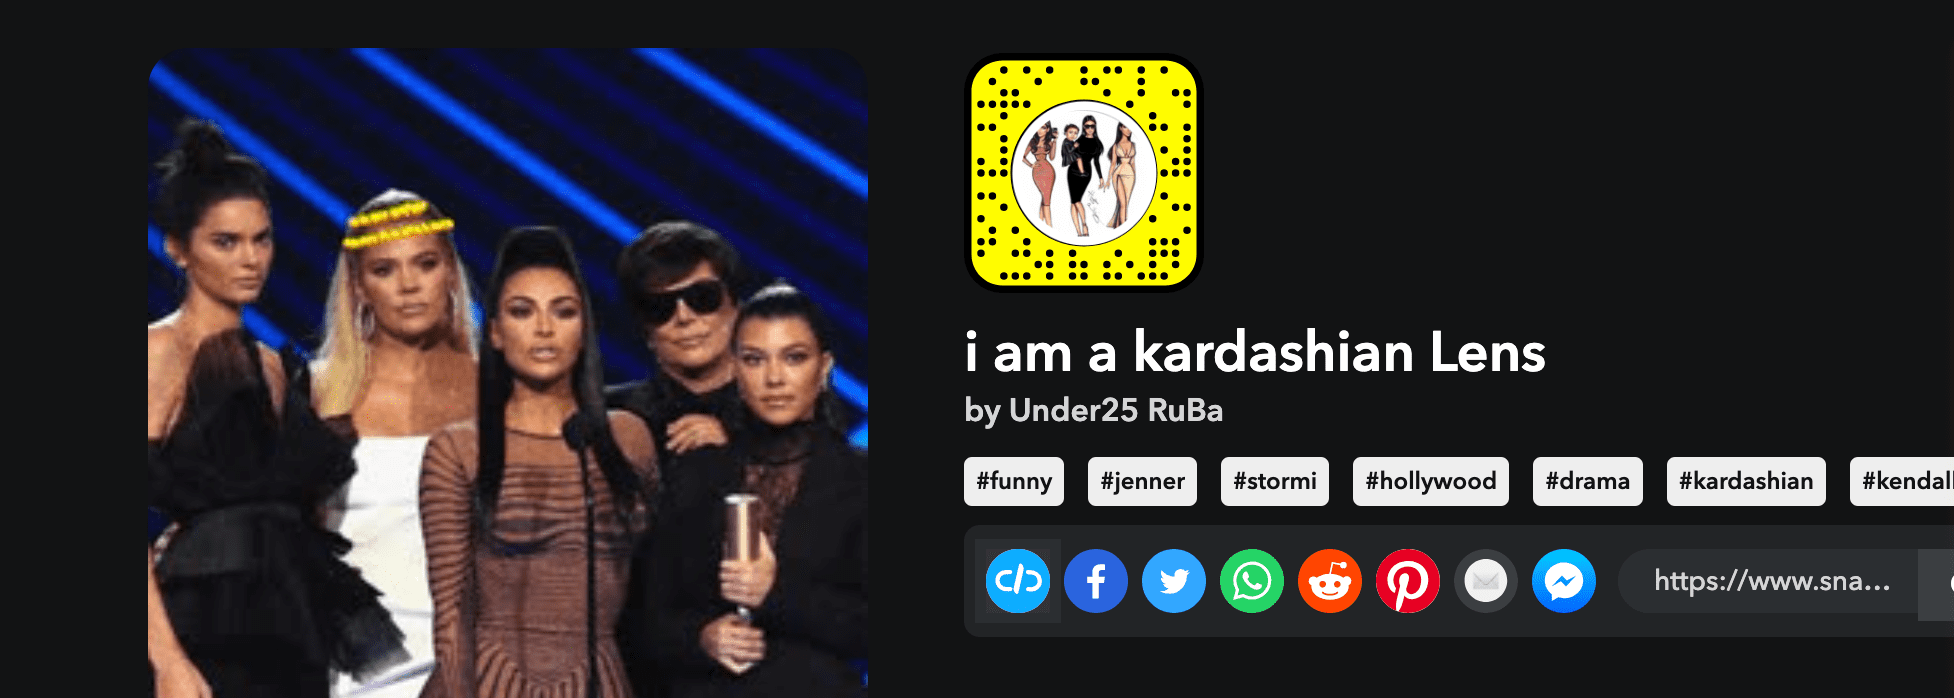 I am a Kardashian Lens by Under25 RuBa